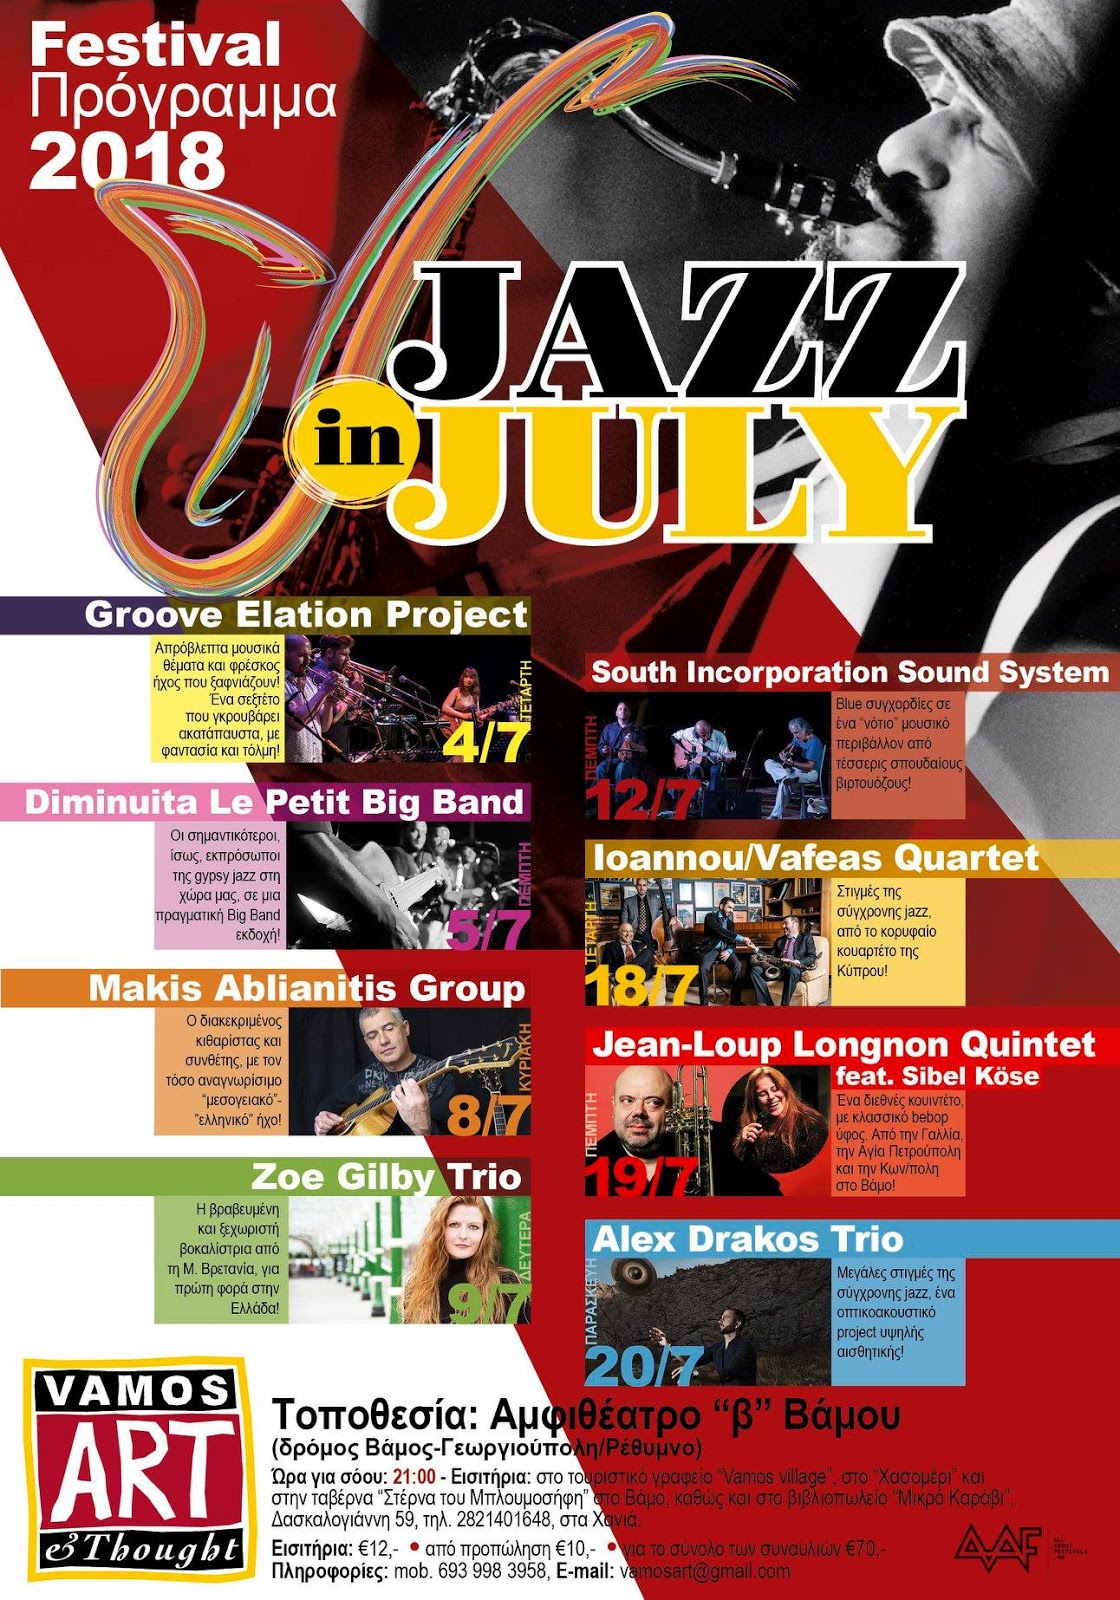 7 Jazz in July festival 2018